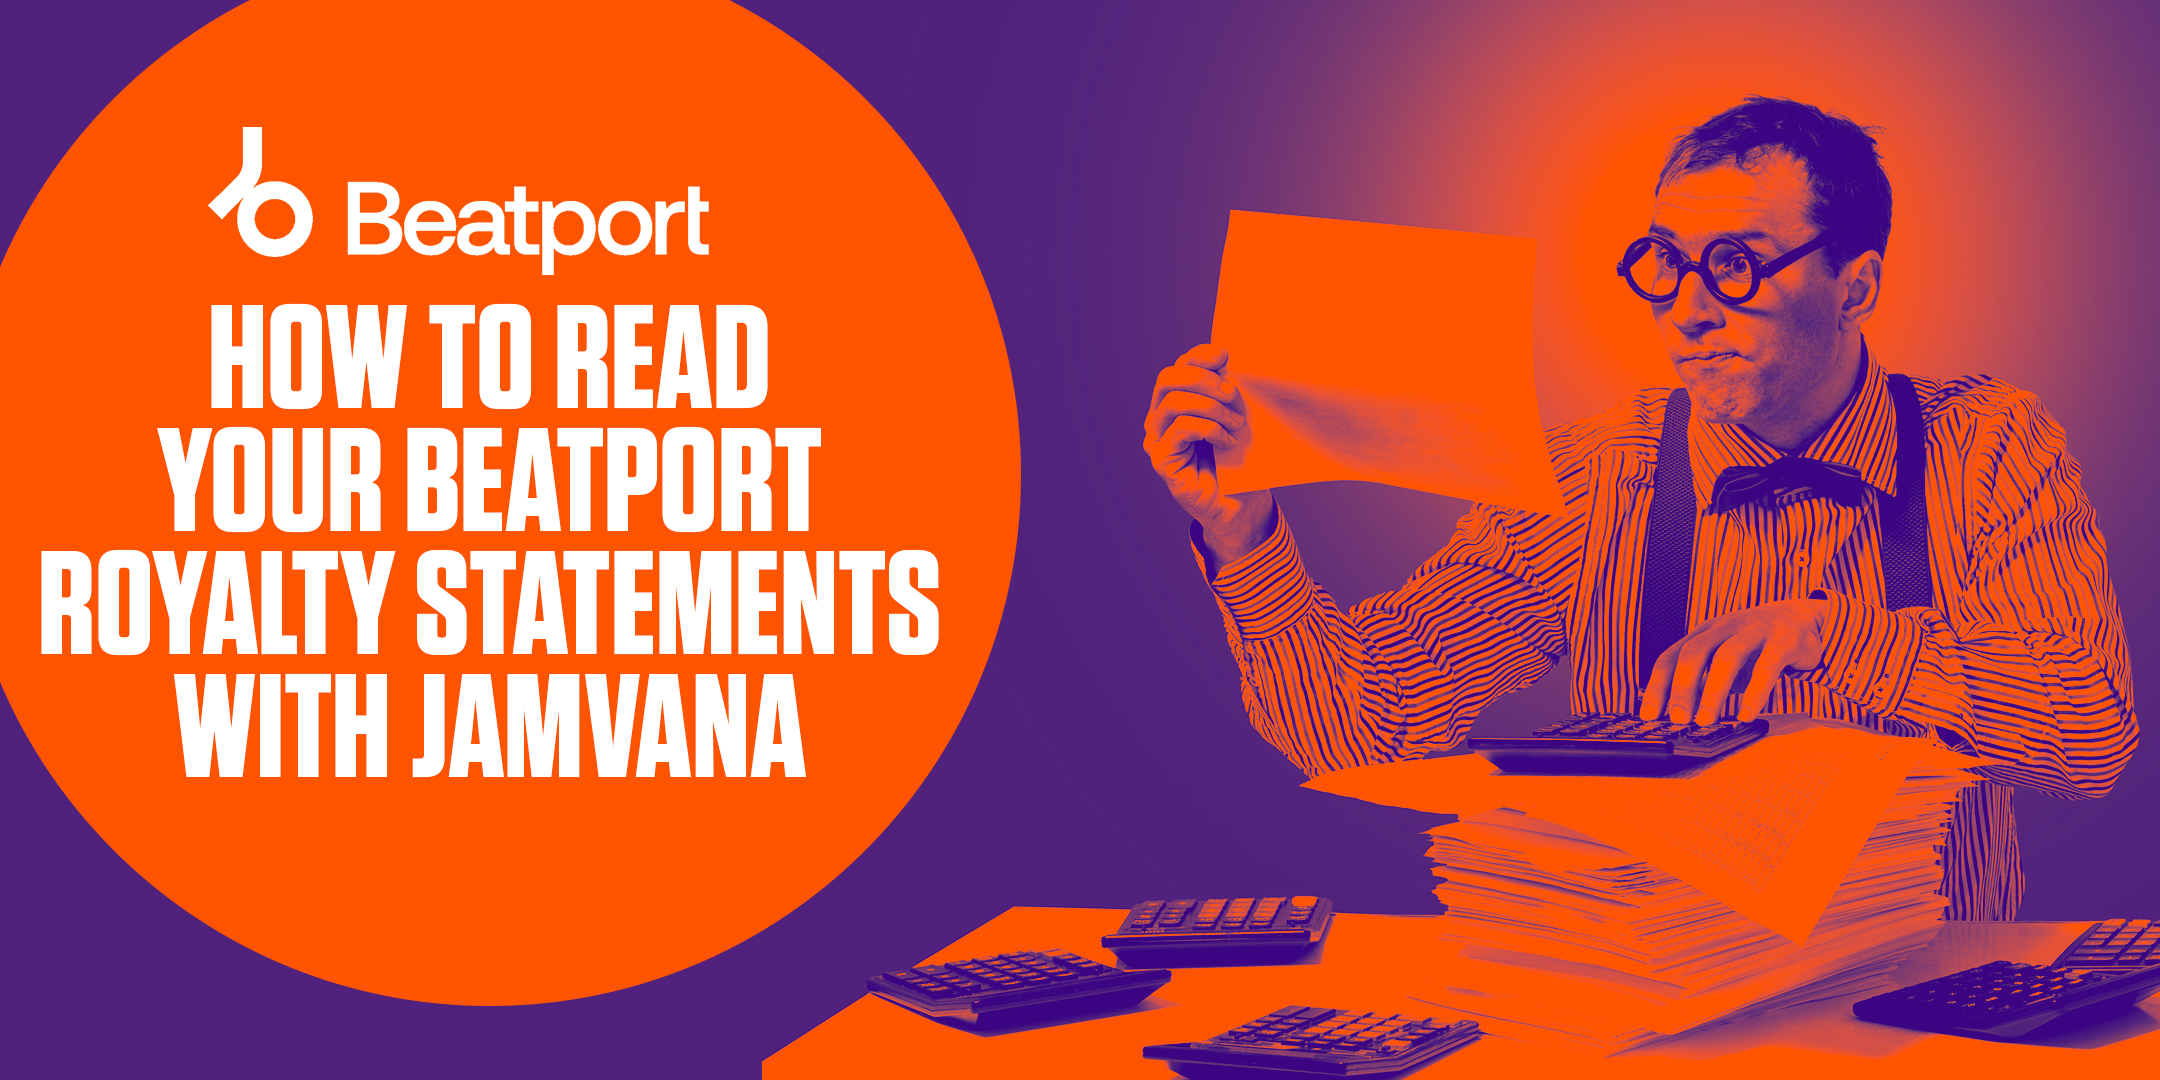 How to read Beatport royalties with Jamvana